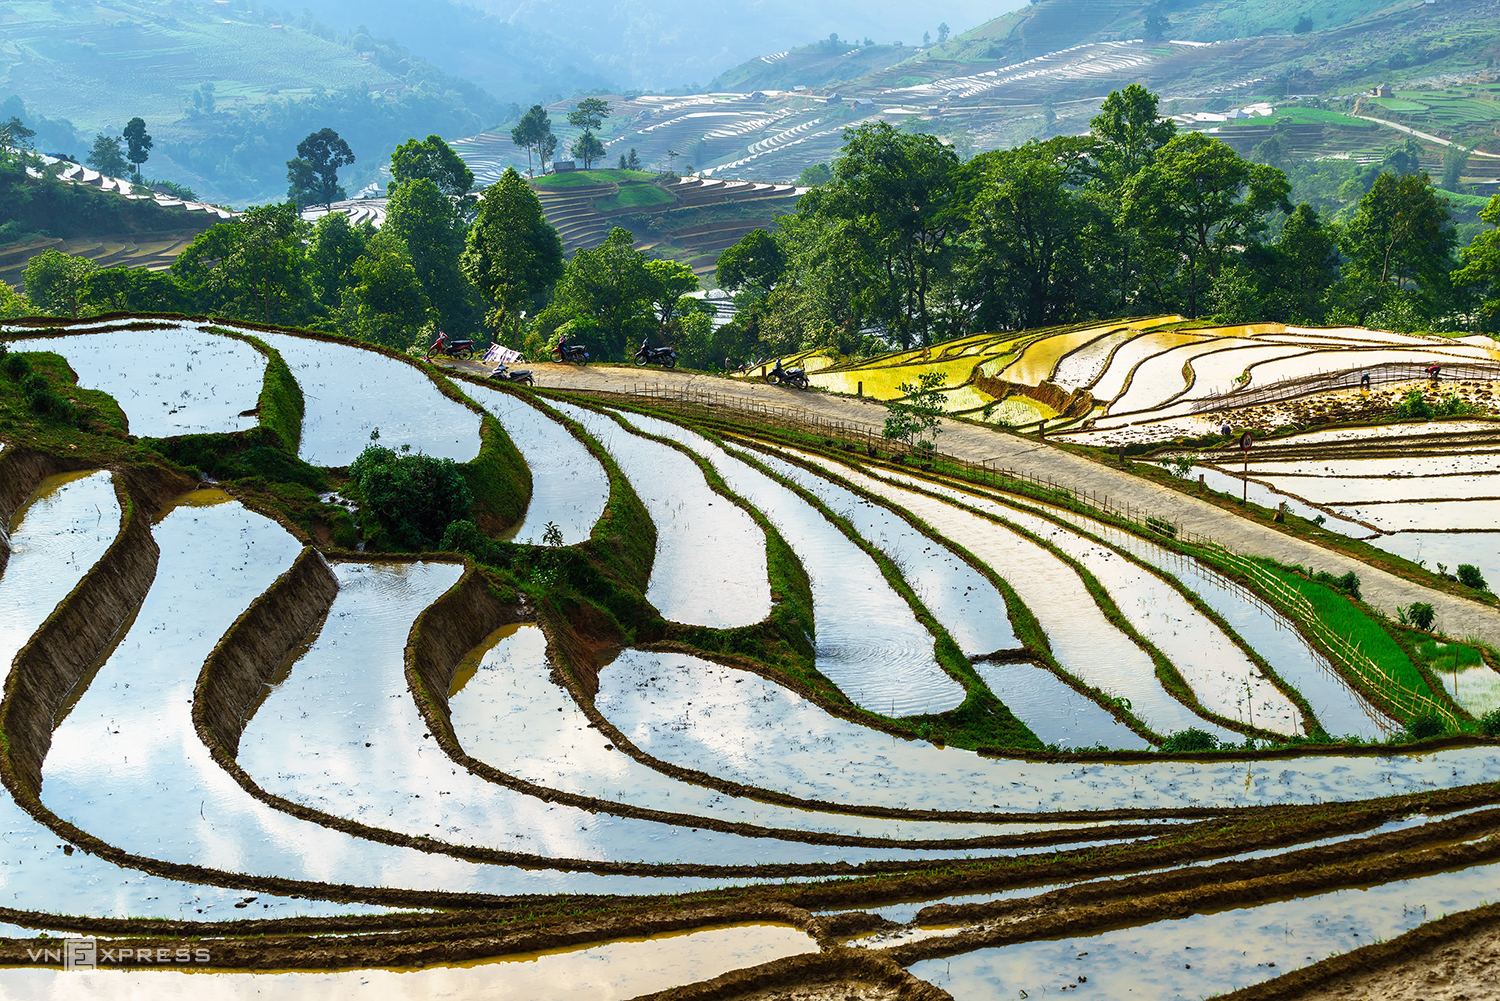 Заболоченные террасные рисовые поля в летний период являются туристической изюминкой северного горного региона.